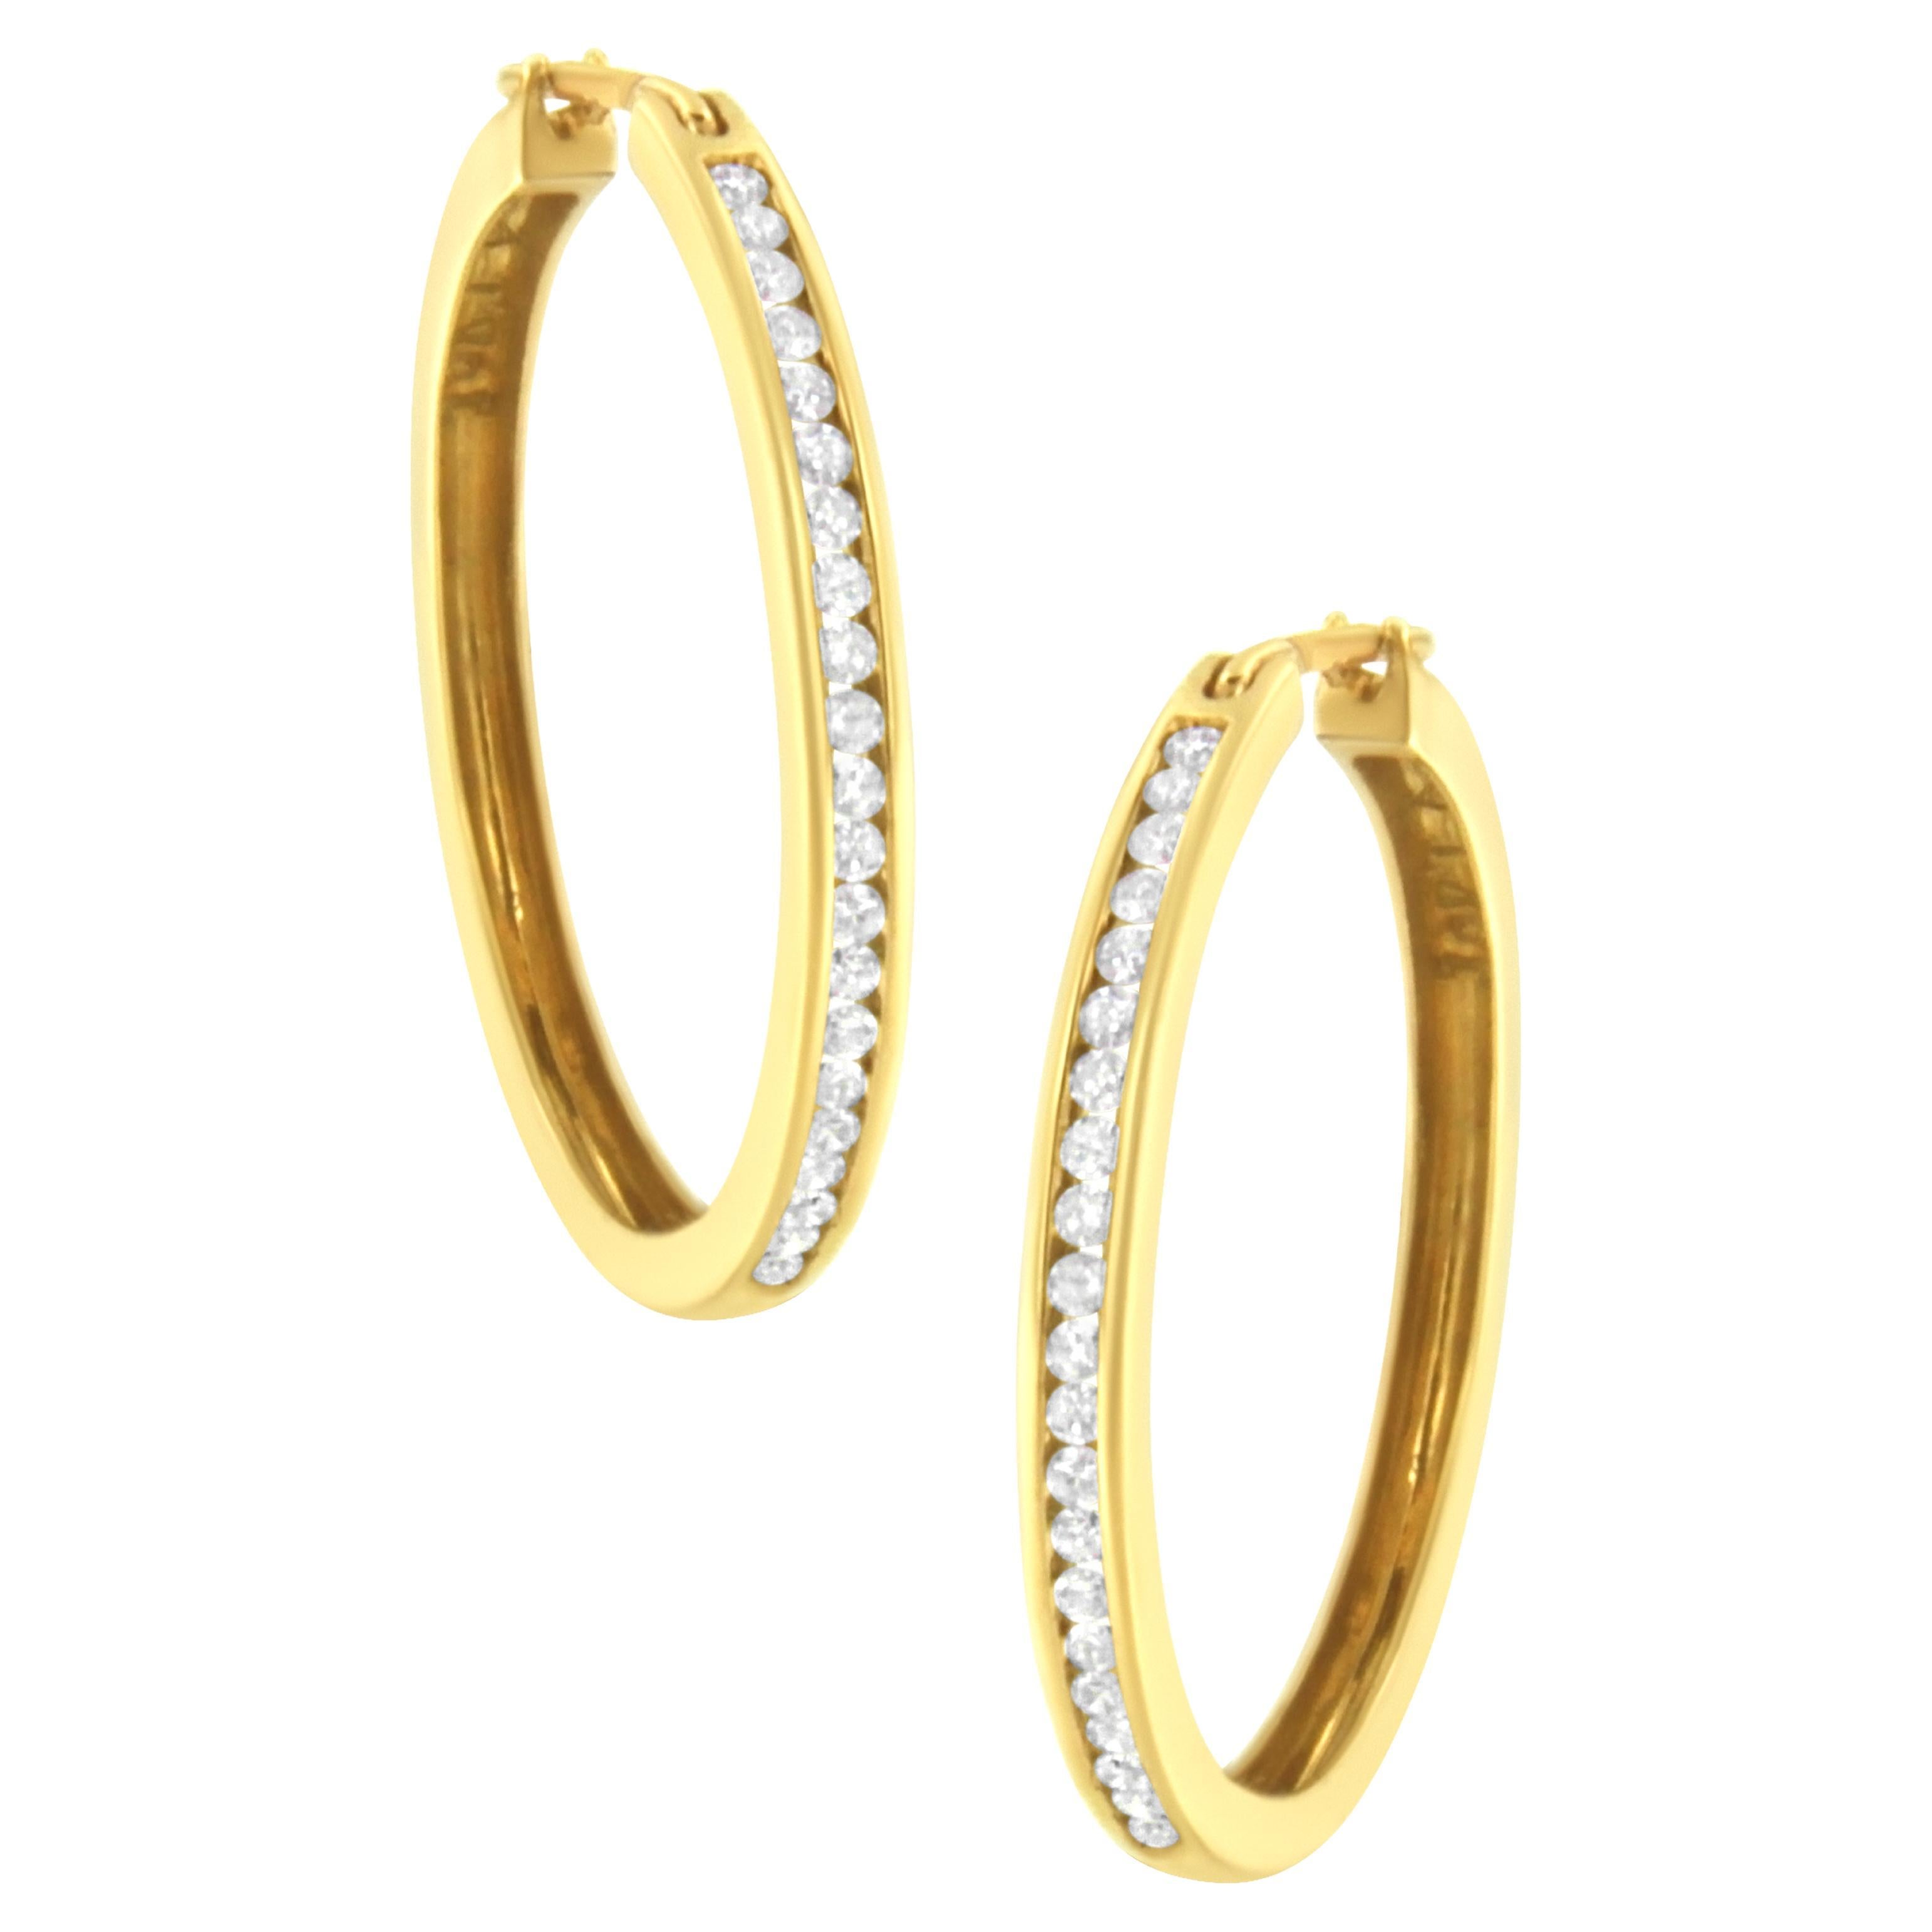 10K Yellow Gold 1/2 Carat Channel Set Diamond Hoop Earrings